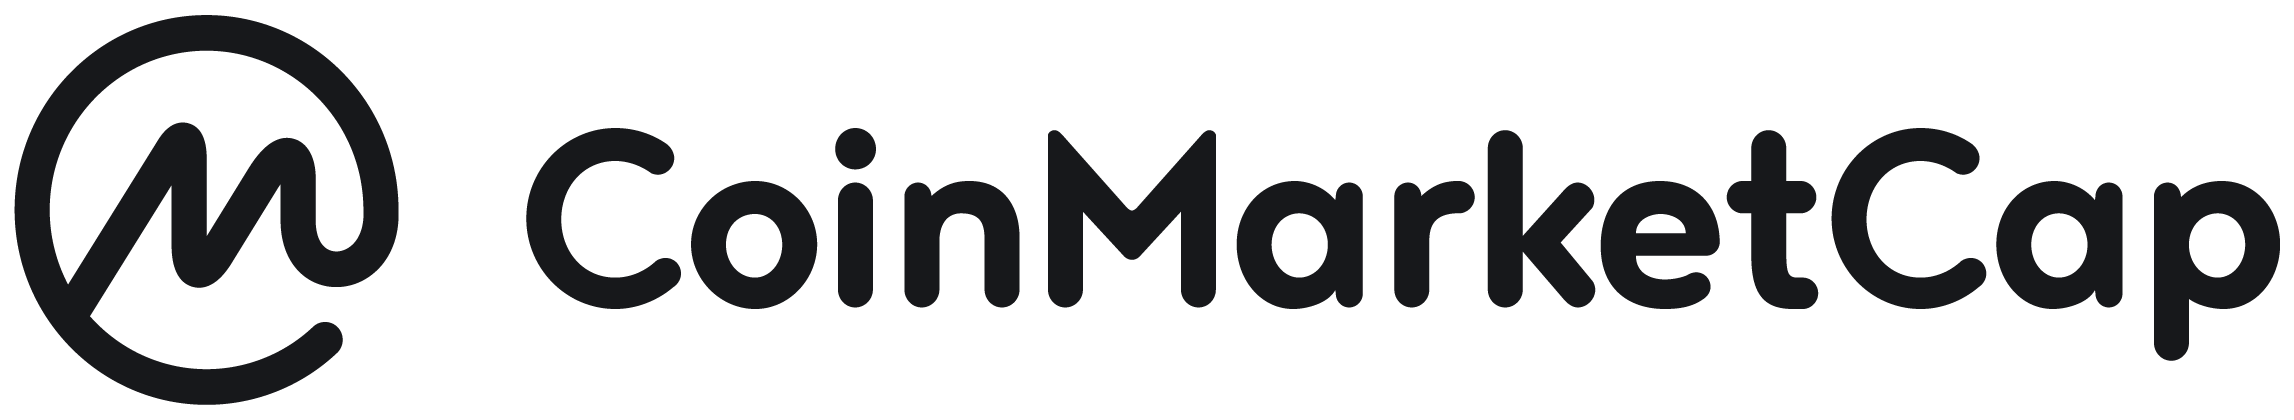 CoinMarketCap-Logo.png